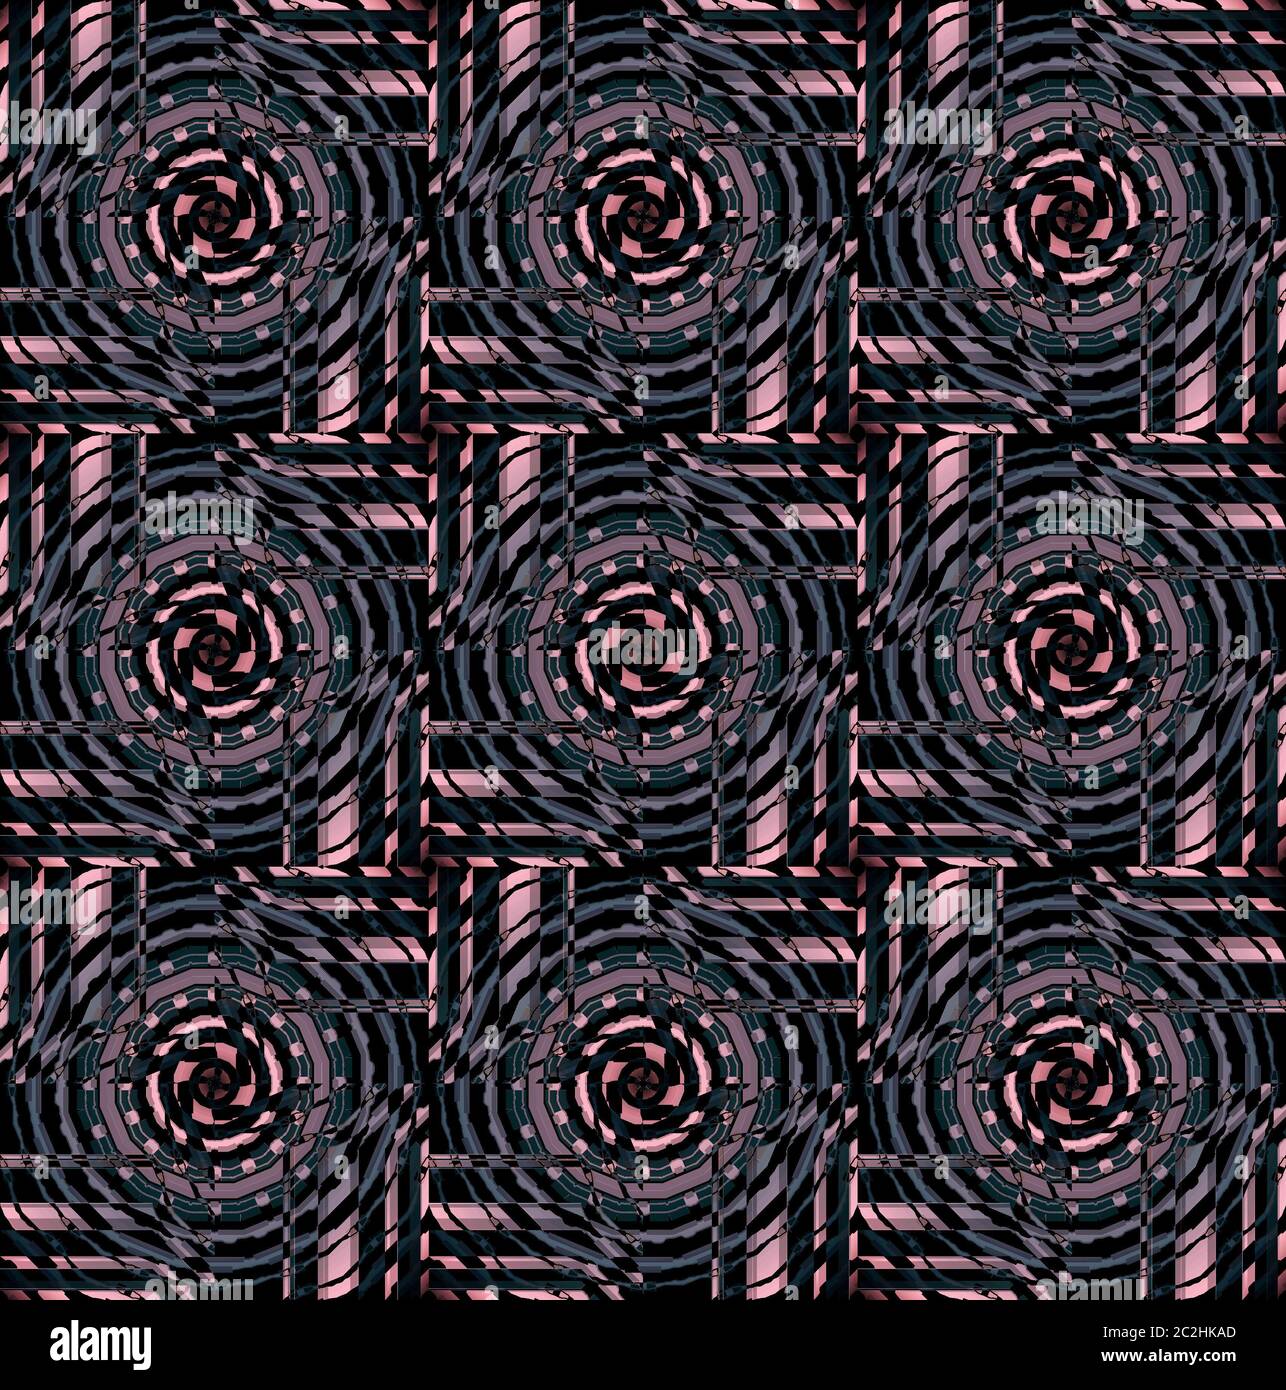 Motif de cercles concentriques réguliers rose gris foncé vert brun noir Banque D'Images